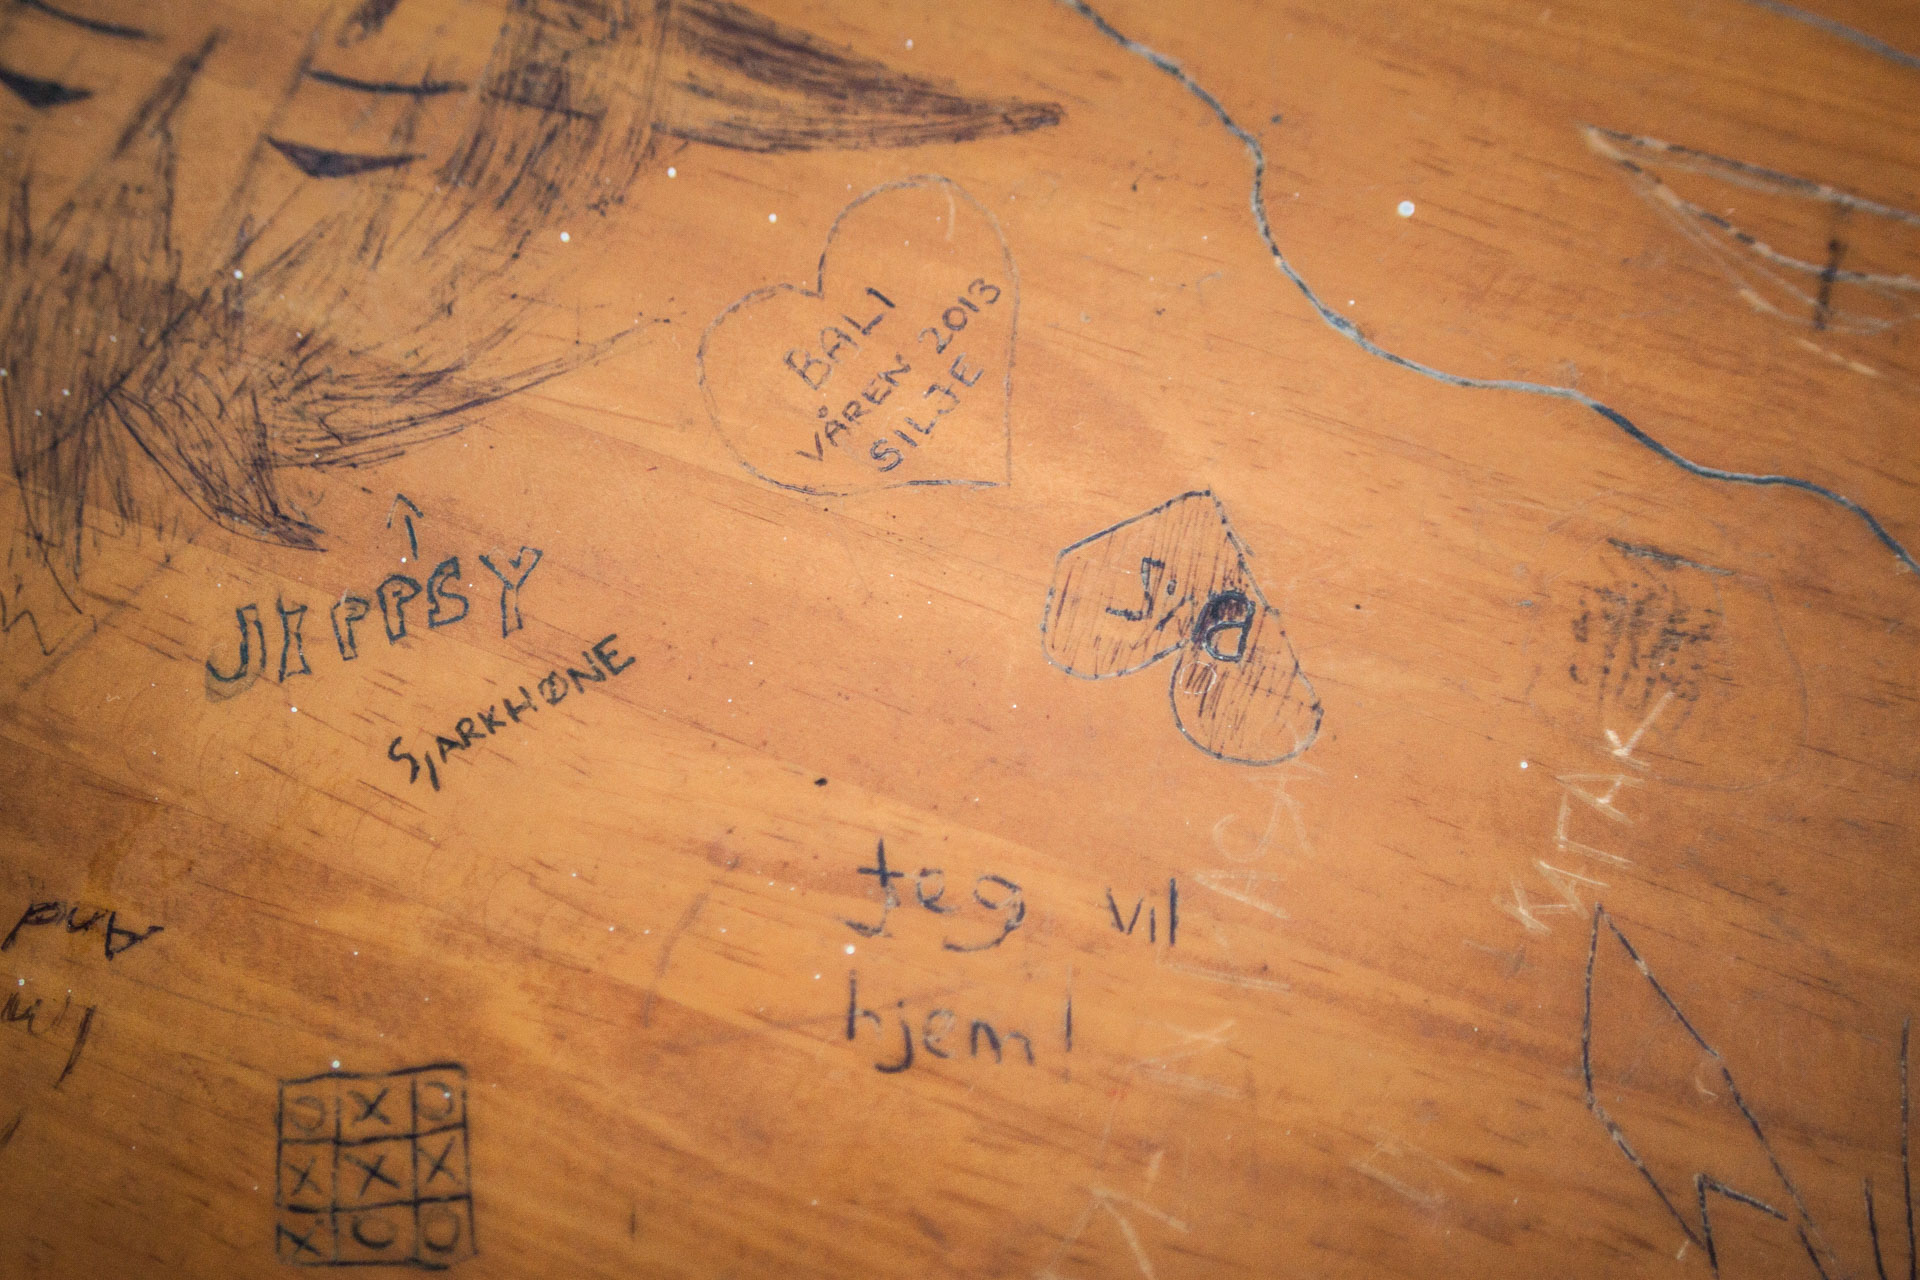 «Jeg vil hjem». Skriblerier på en av skolepultene. (Foto: Andrea A. Thiis-Evensen)